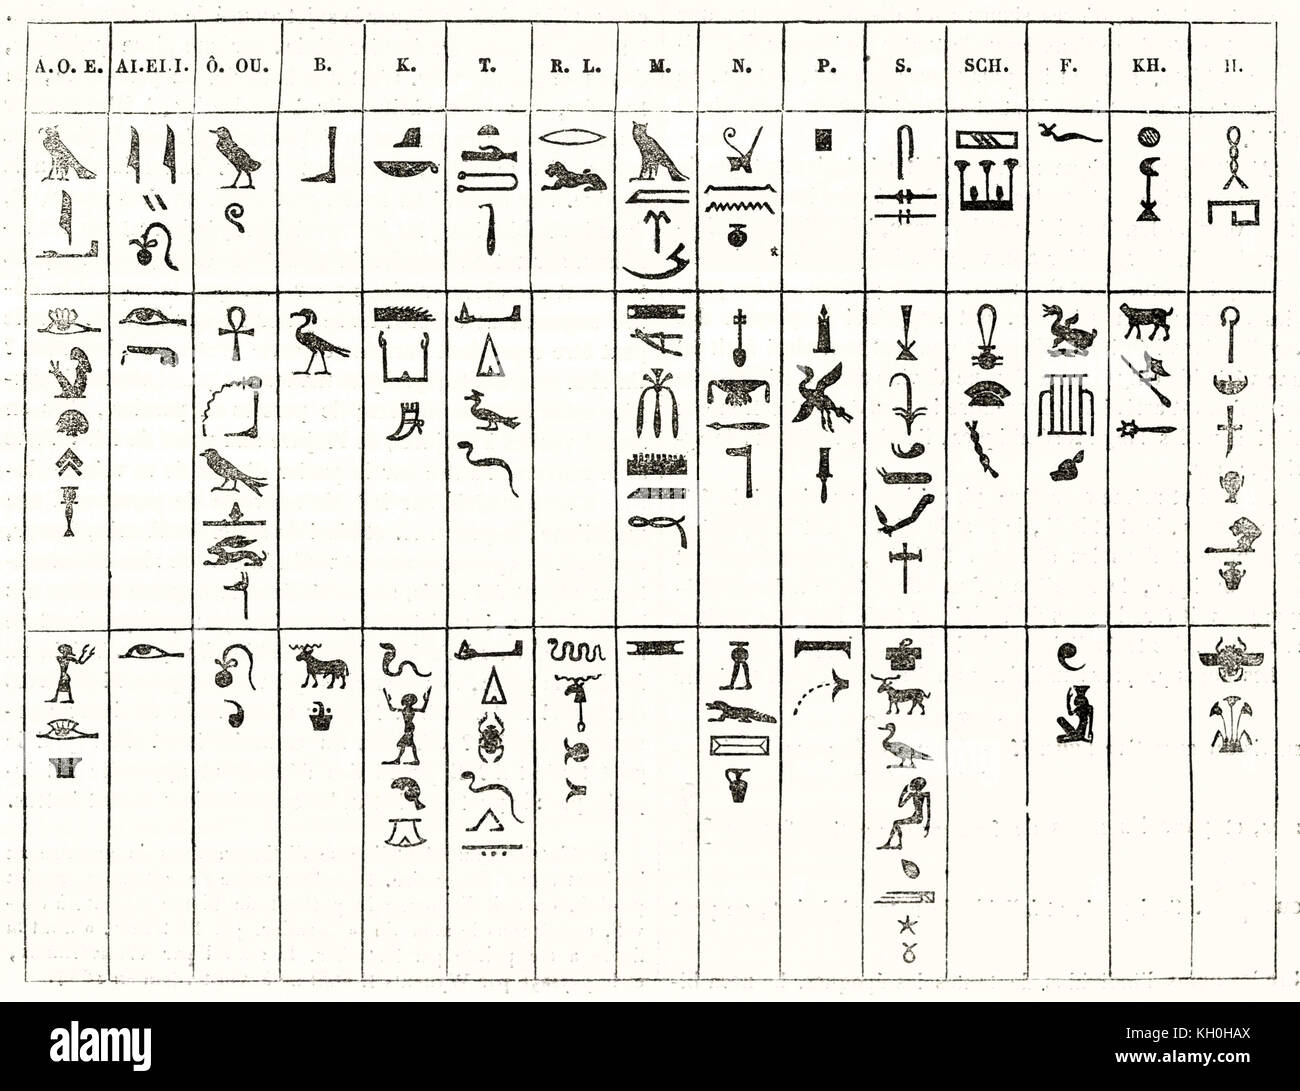 Geroglifici egiziani piastra fonetico. Publ. su Magasin pittoresco, Parigi, 1847 Foto Stock